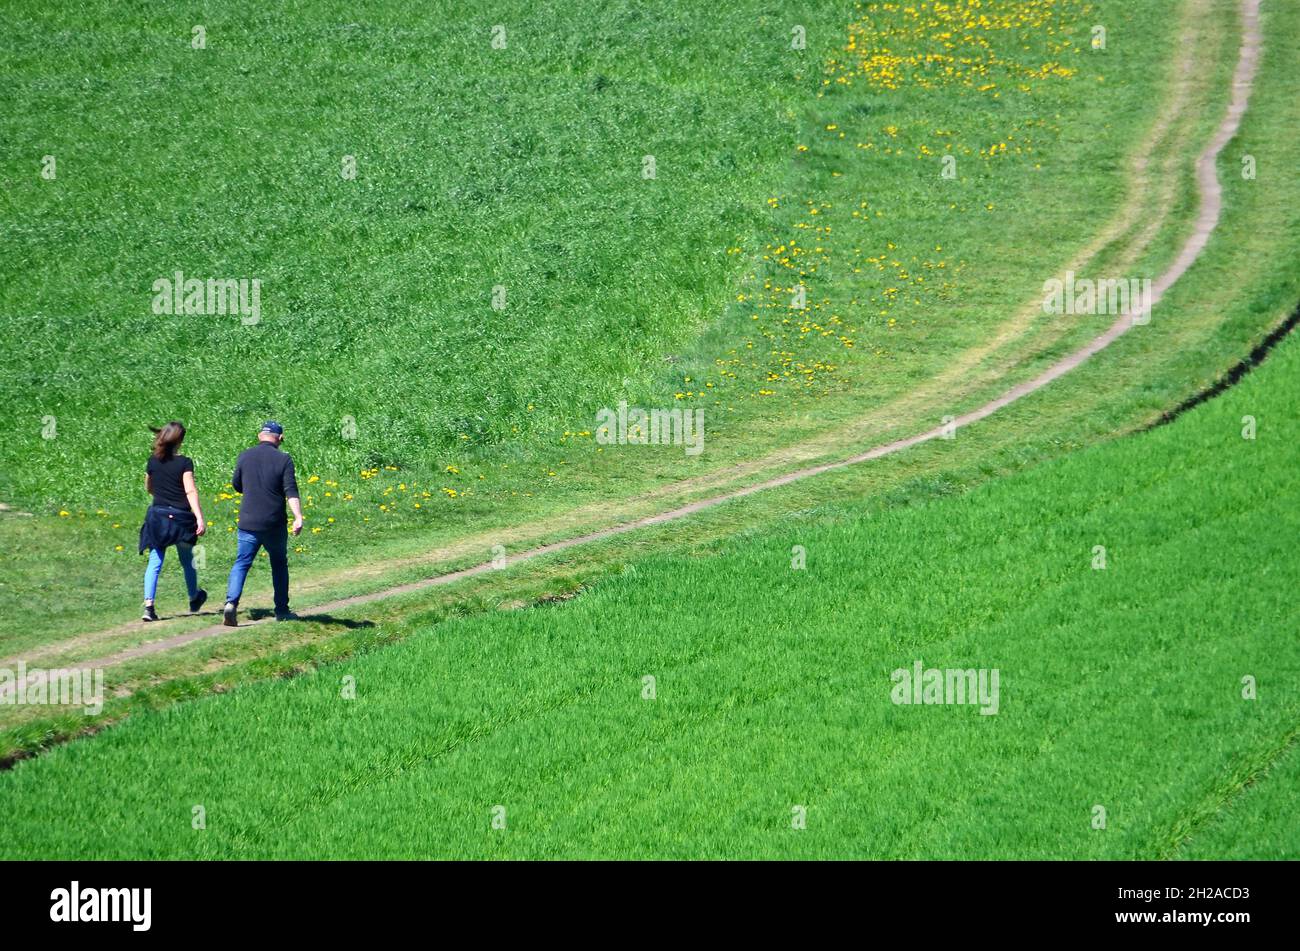 Zwei erwachsene Wanderer auf einer grünen Wiese (Oberösterreich, Österreich) - Two adult hikers on a green meadow (Upper Austria, Austria) Stock Photo